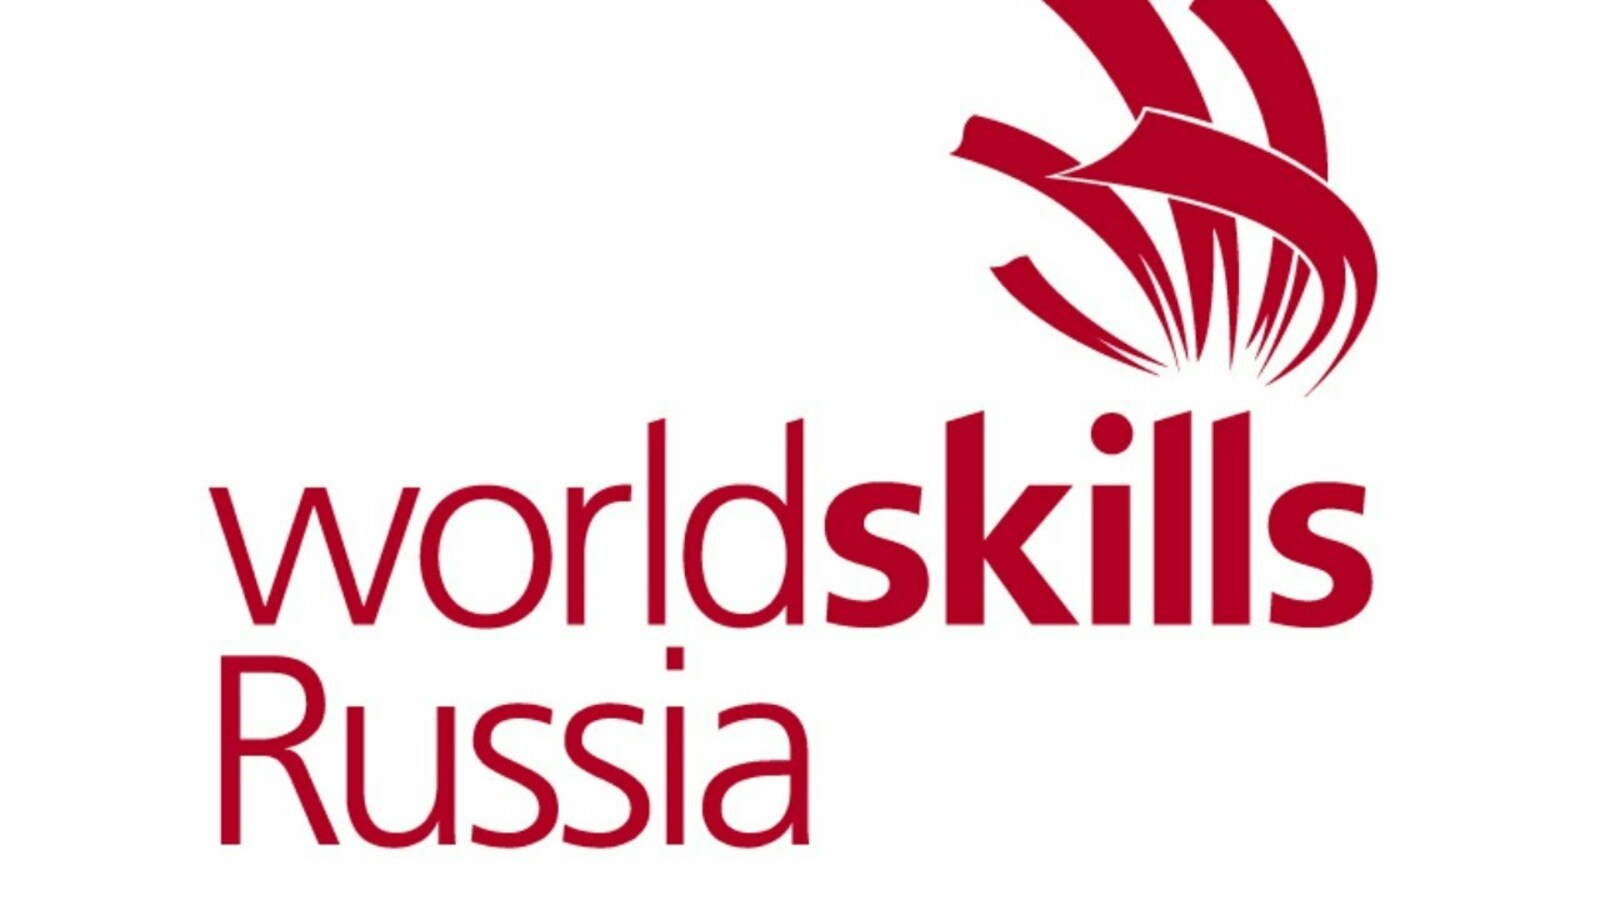 Путин назвал блестящим результат российской сборной WorldSkills